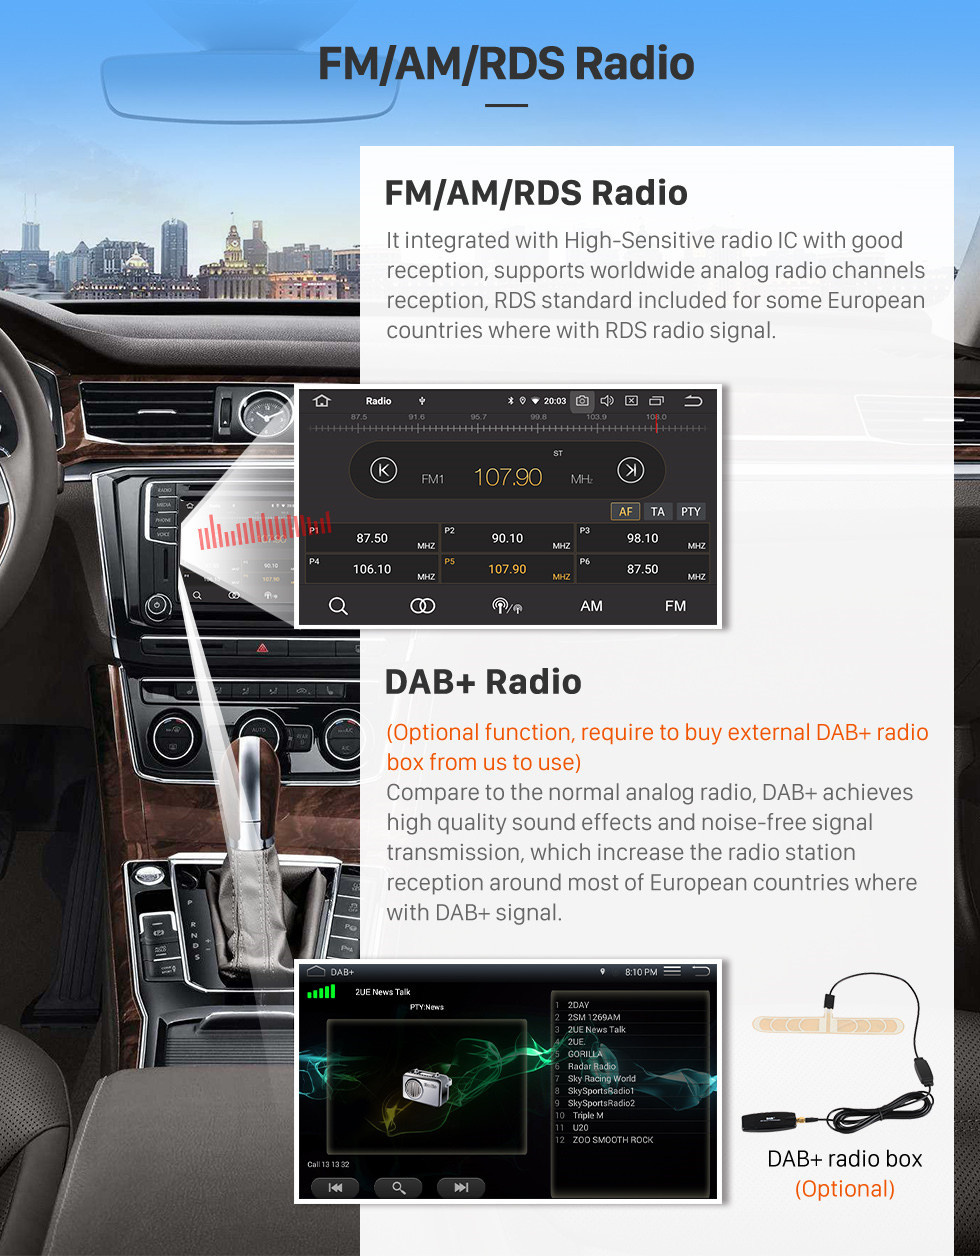 Seicane 7 polegadas Android 10.0 HD touchscreen 2003-2011 Porsche Cayenne GPS Navigation Radio com WiFi Bluetooth Carplay Mirror Link com suporte OBD2 Backup Camera DVR 1080P